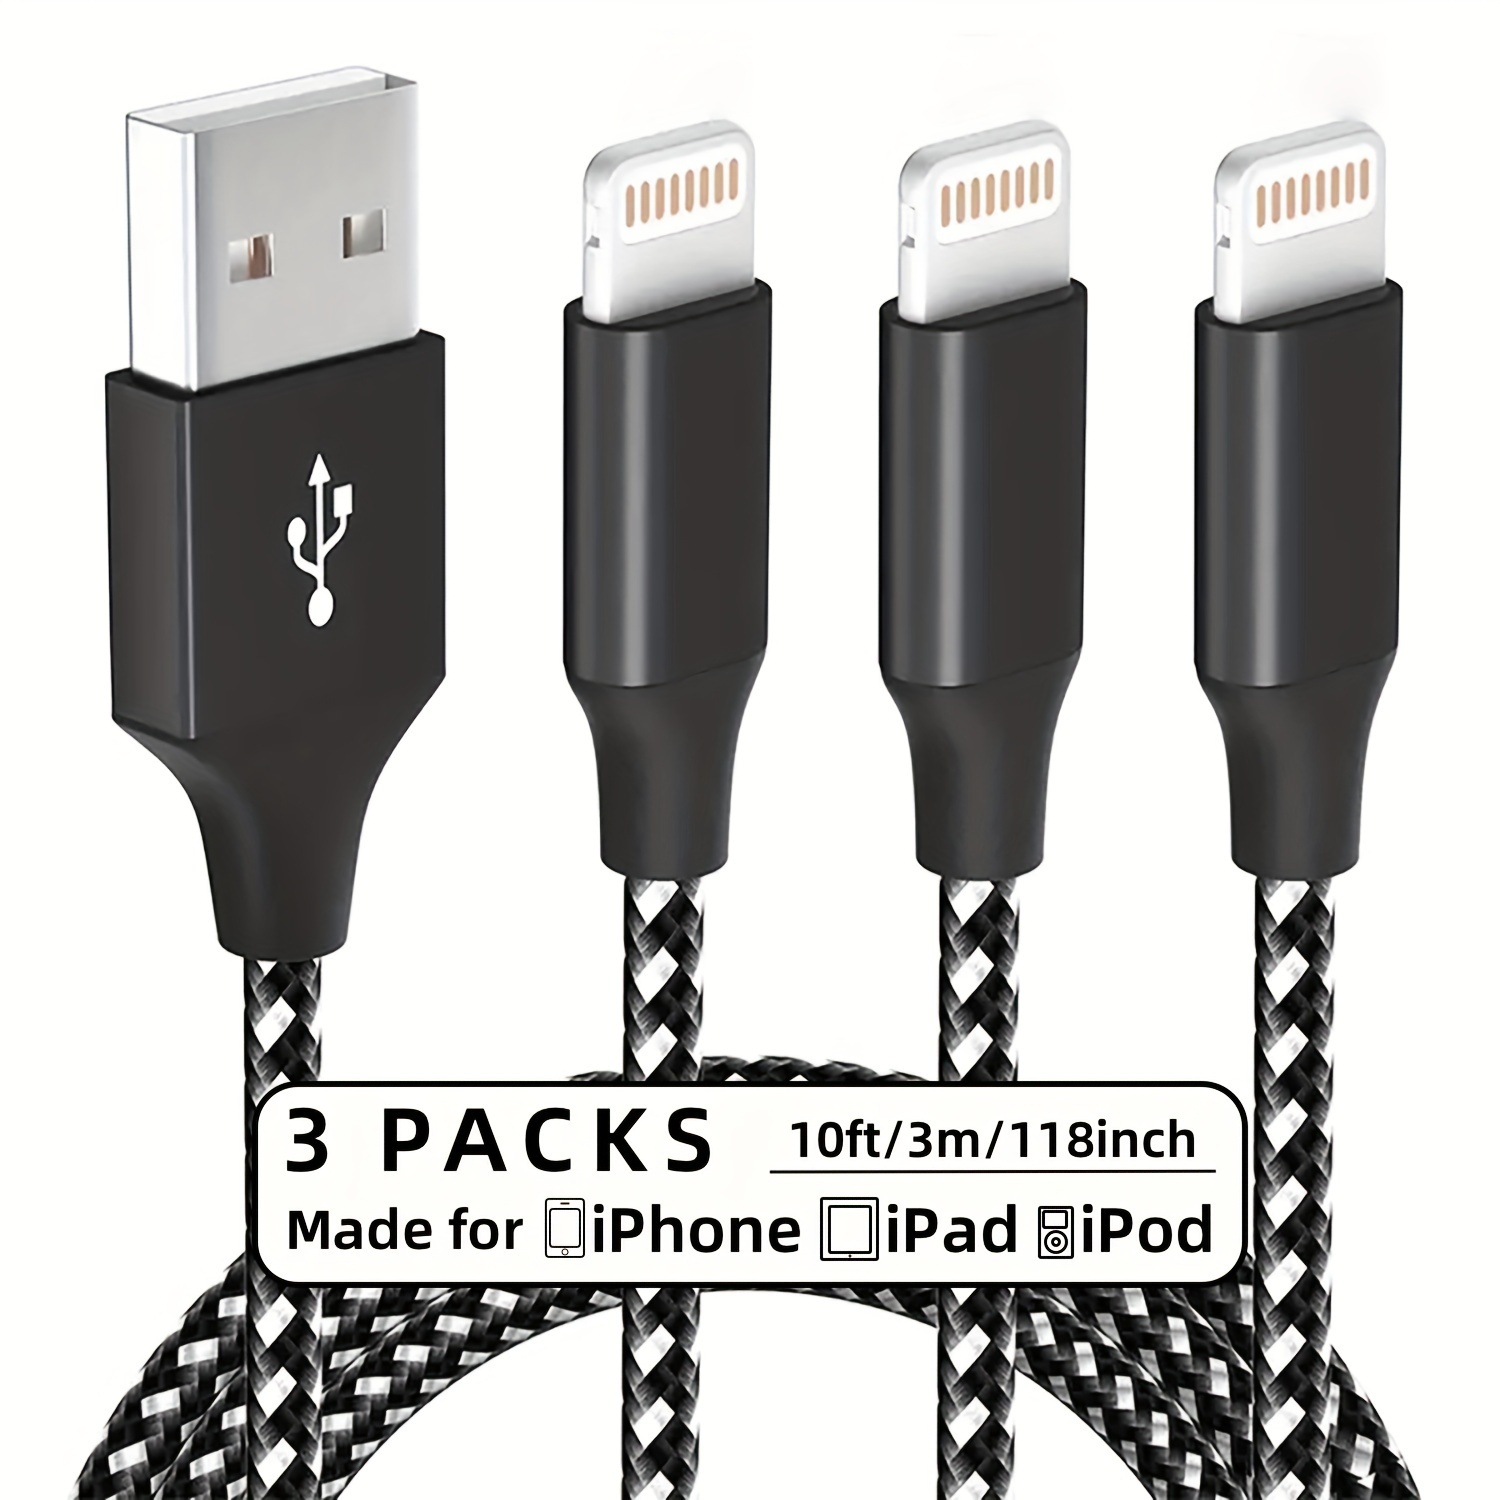 Cable de carga rapida micro USB 2.4 Amp, 2 metros